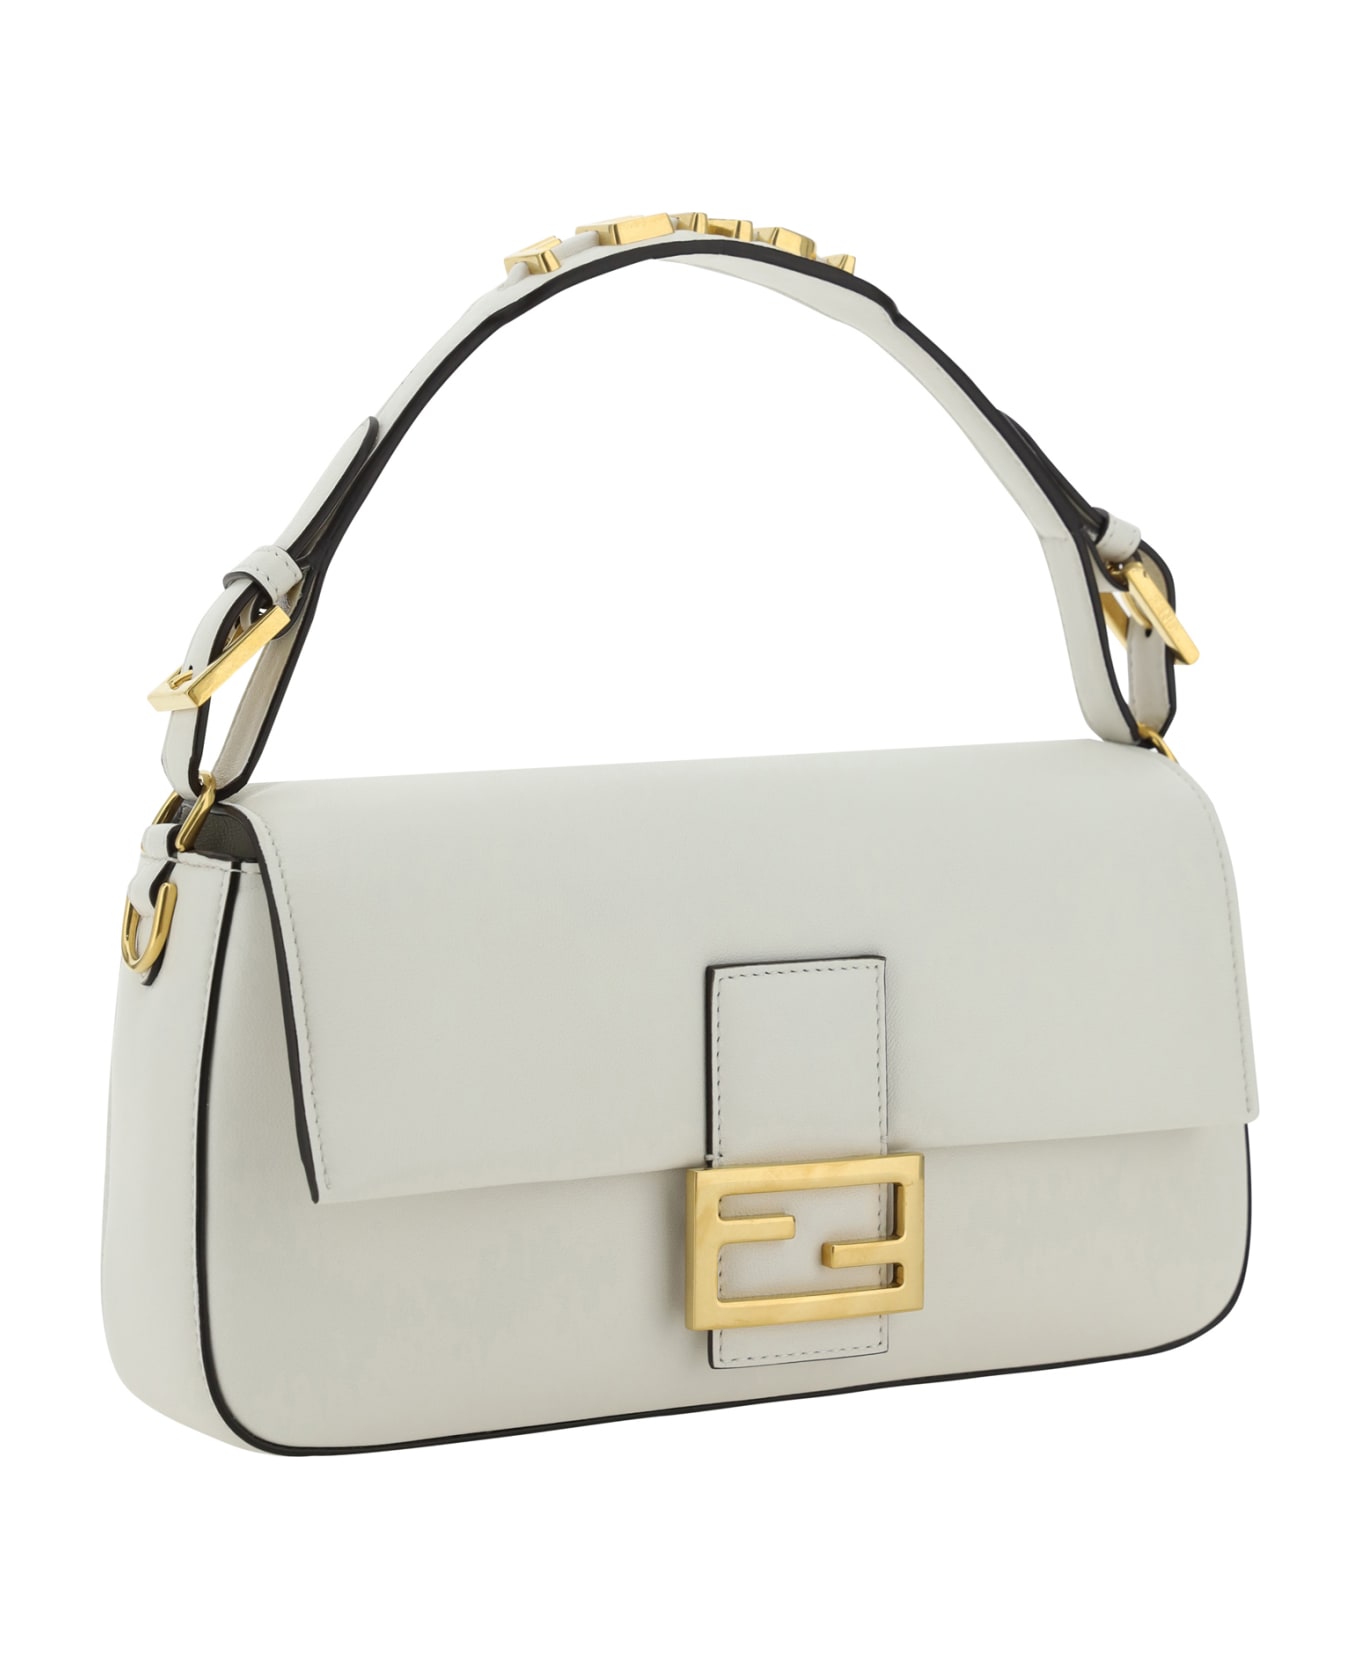 Fendi Baguette Handbag - WHITE トートバッグ